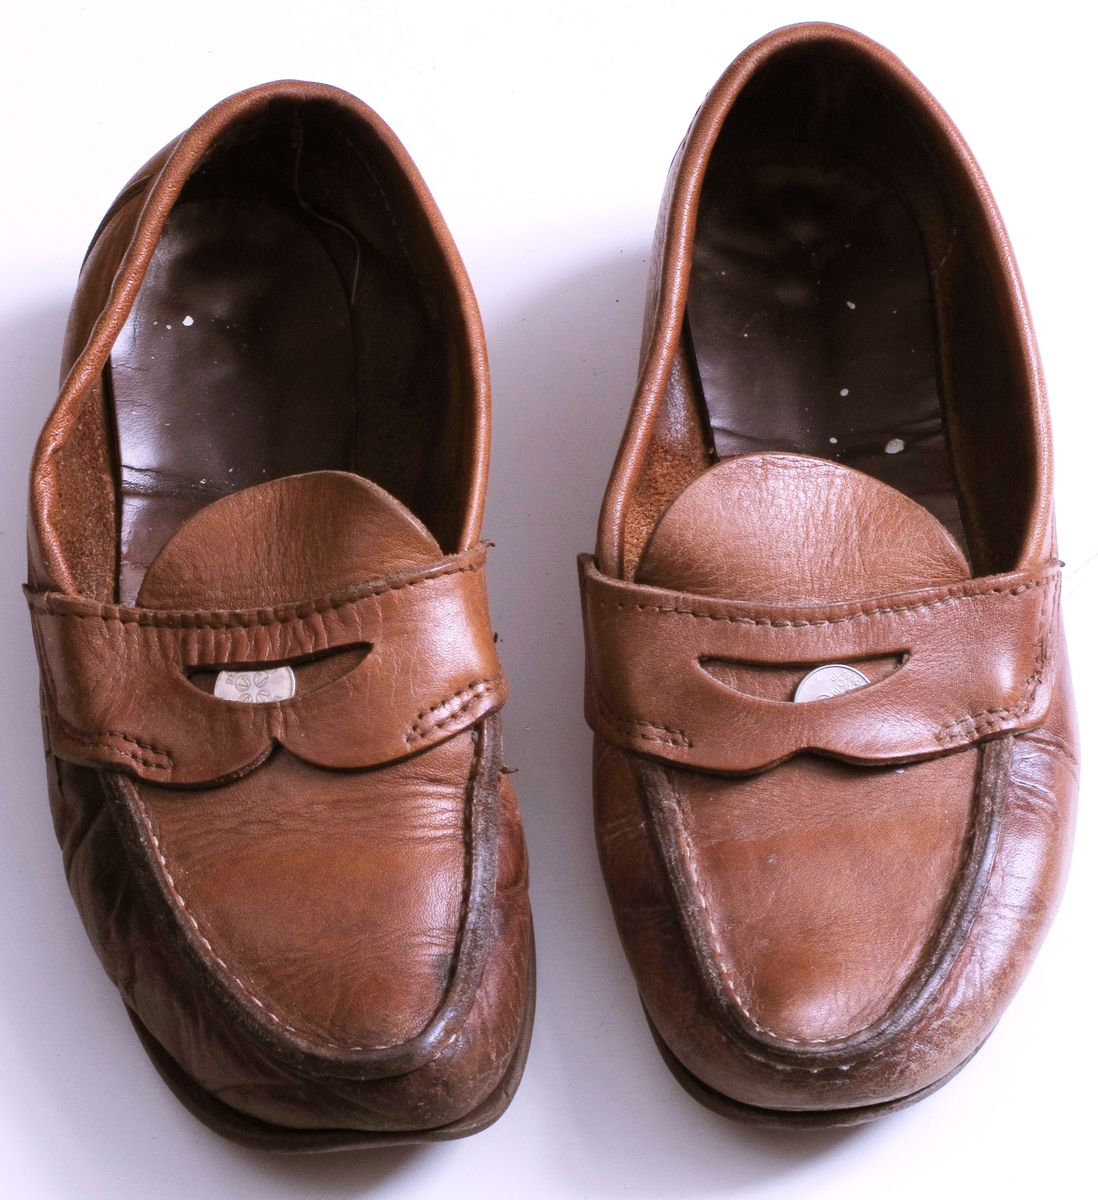 Brune makkasiner i lær, med brune gummisåler.  Lomme foran med 25-ører i.  Høyre sko har en metallstift i sålen rett foran hælen.  Velbrukte, høyre sko er gjennomslitt på utsiden av foten, og med malingflekker oppi.